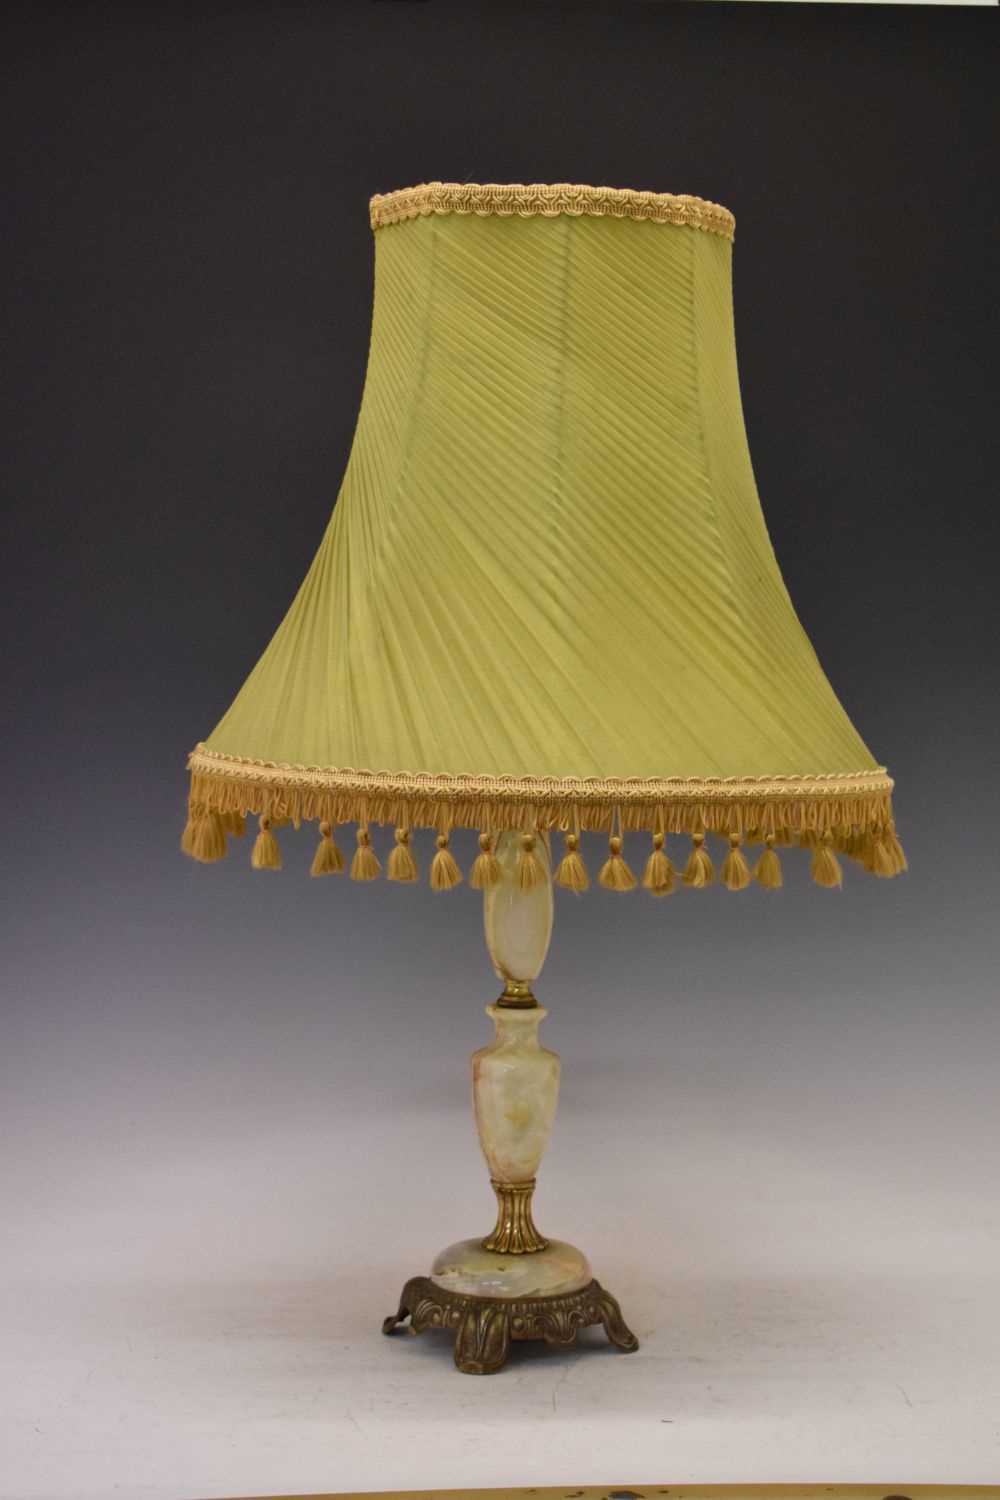 Onyx lamp base with shade - Image 2 of 6